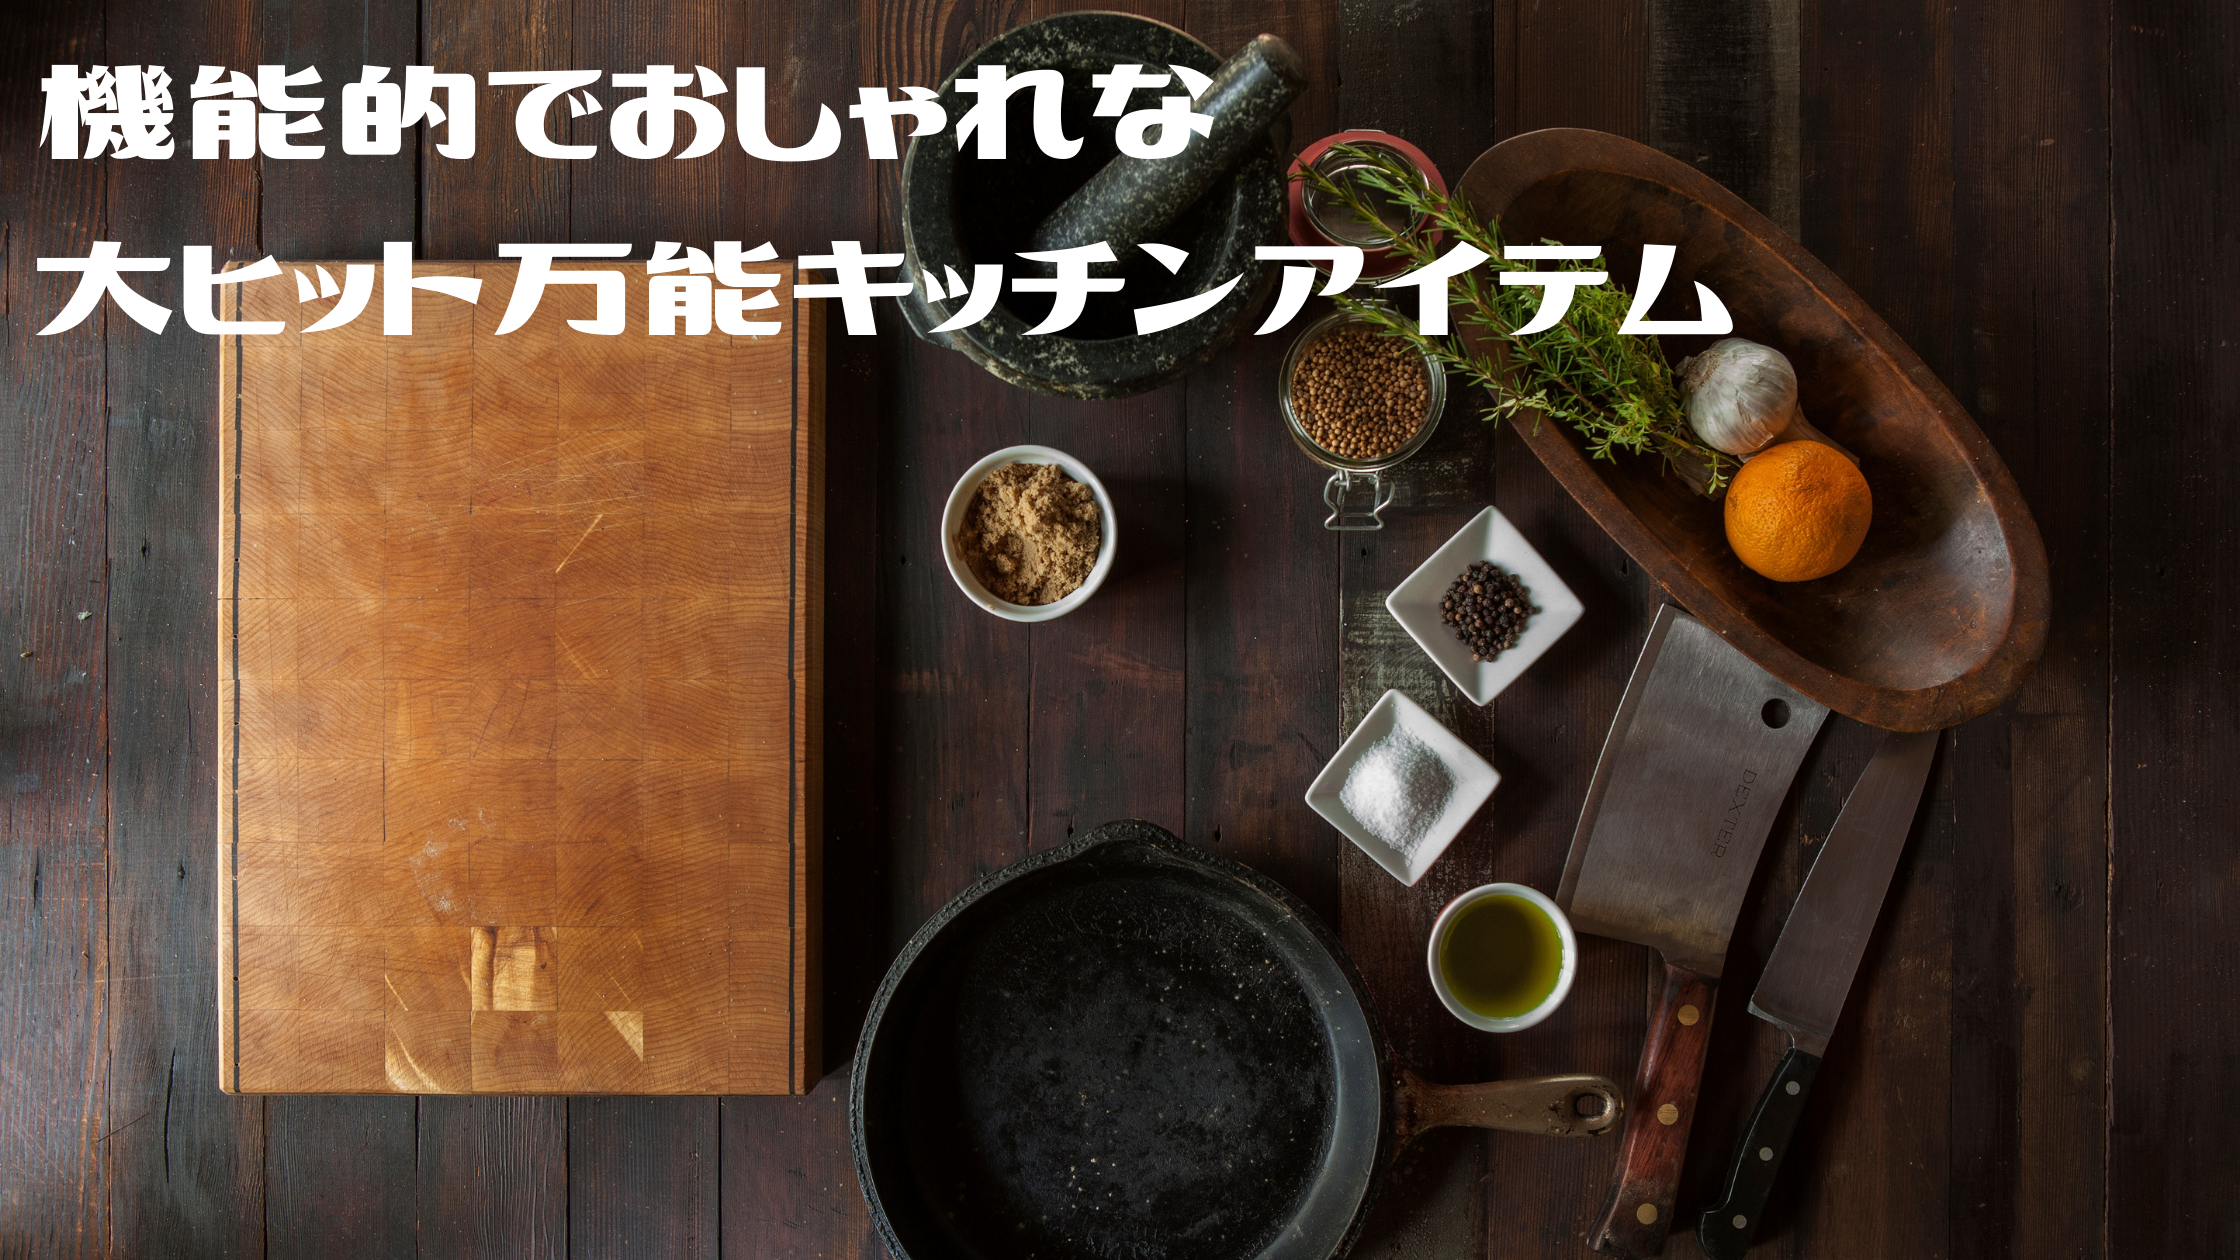 機能的でおしゃれな【最新キッチンアイテム】『オメガヴィスペン』『レンジで揚げ太郎』